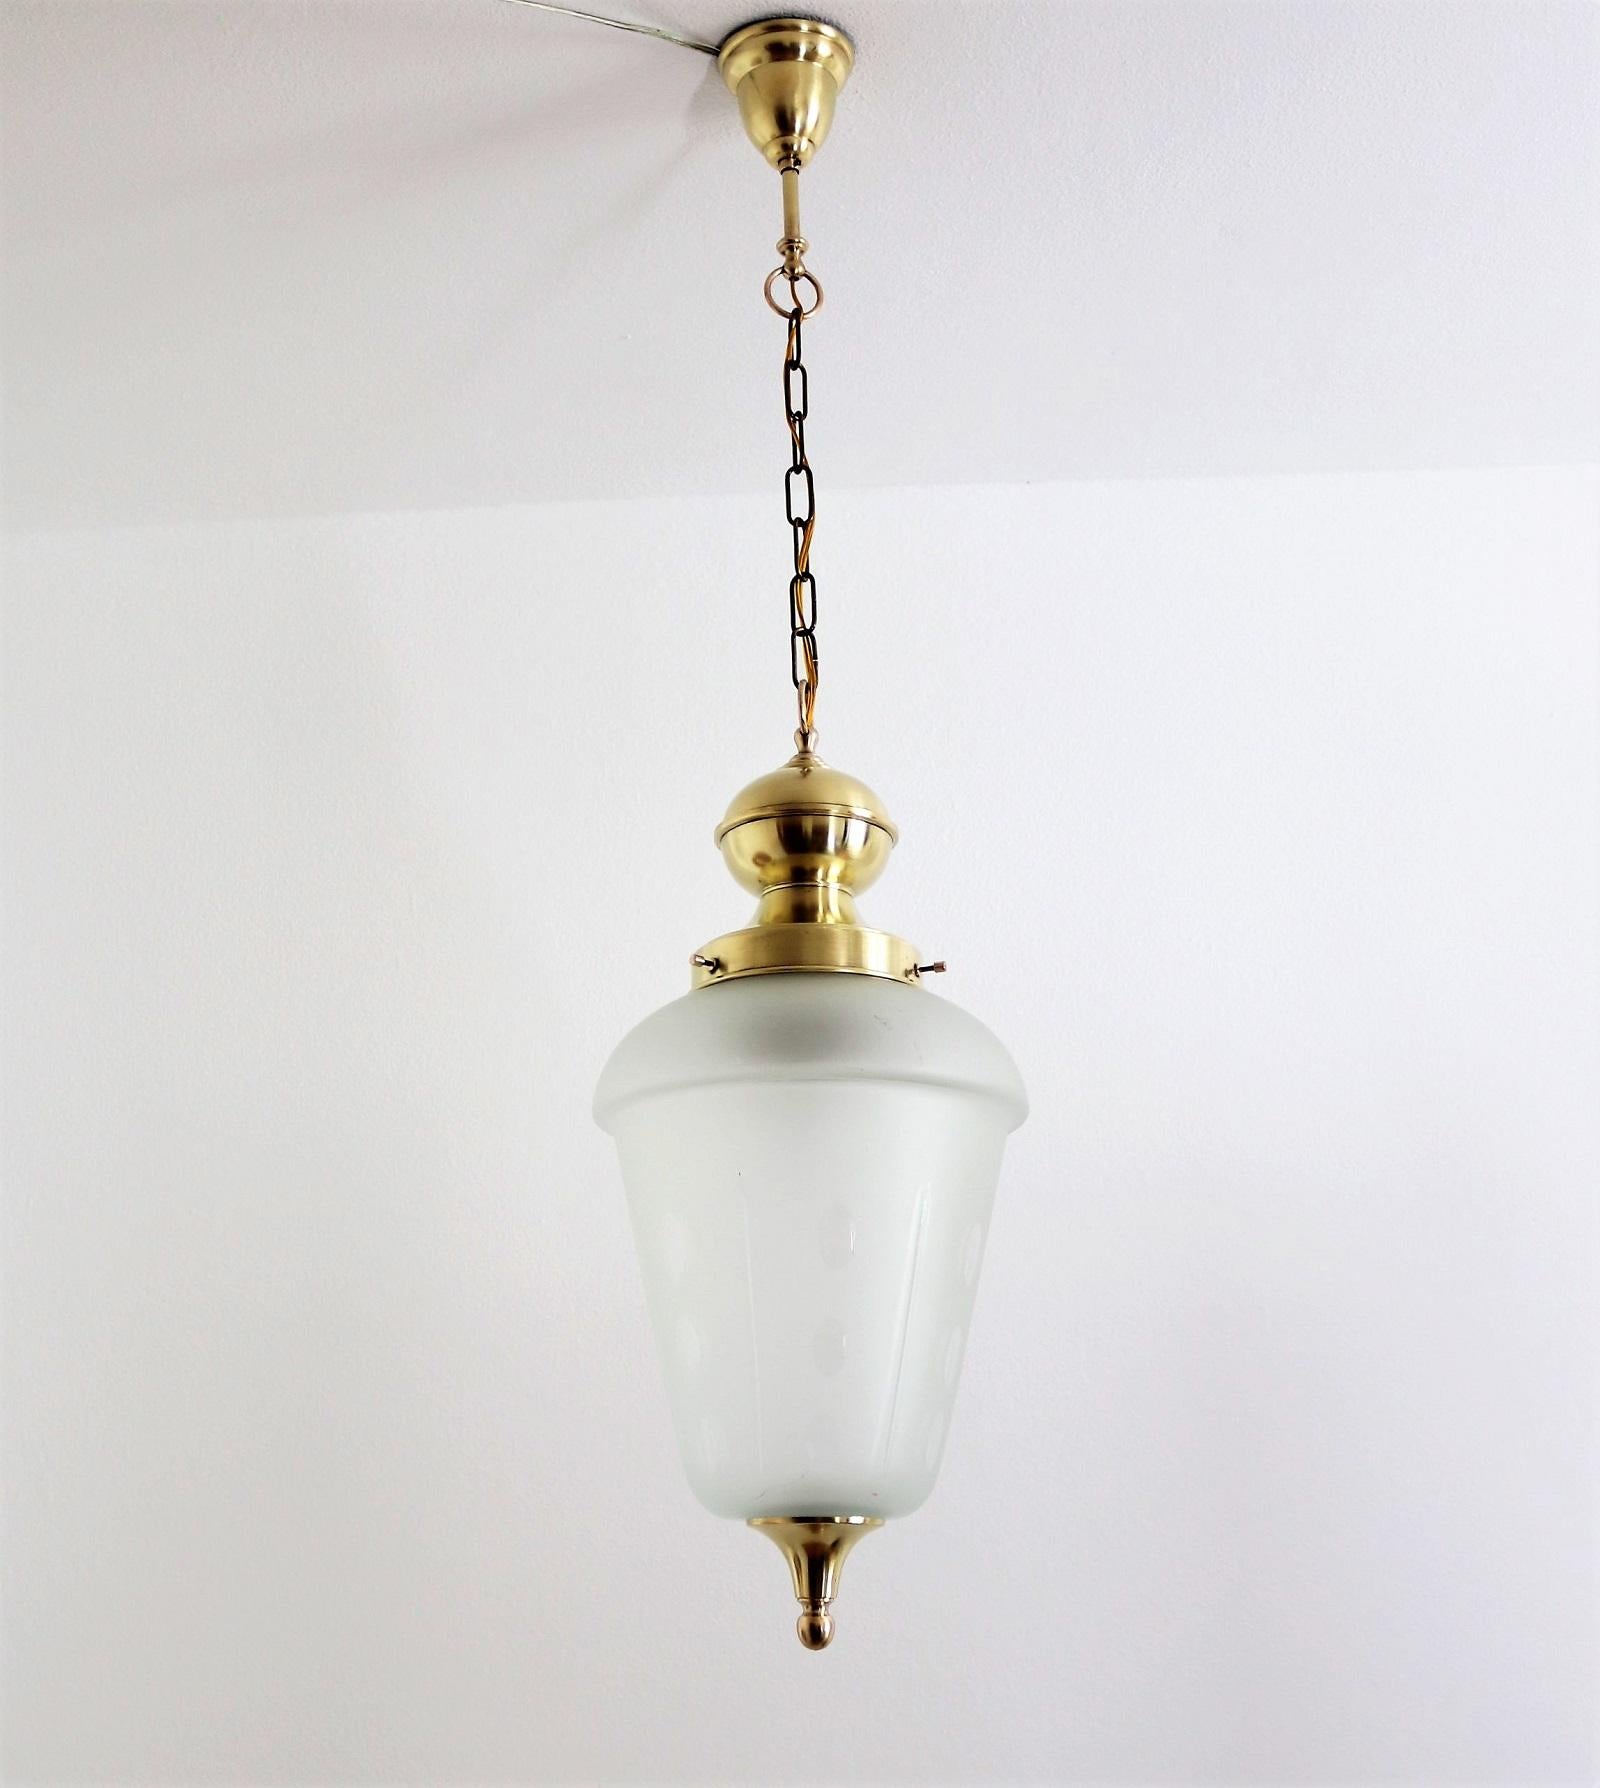 Magnifique lanterne ou lampe suspendue de la fin du milieu du siècle italien, fabriquée dans les années 1960-1970.
La lampe suspendue est faite de verre dépoli avec des points et des lignes verticales.
Les détails dorés sont en laiton, avec une